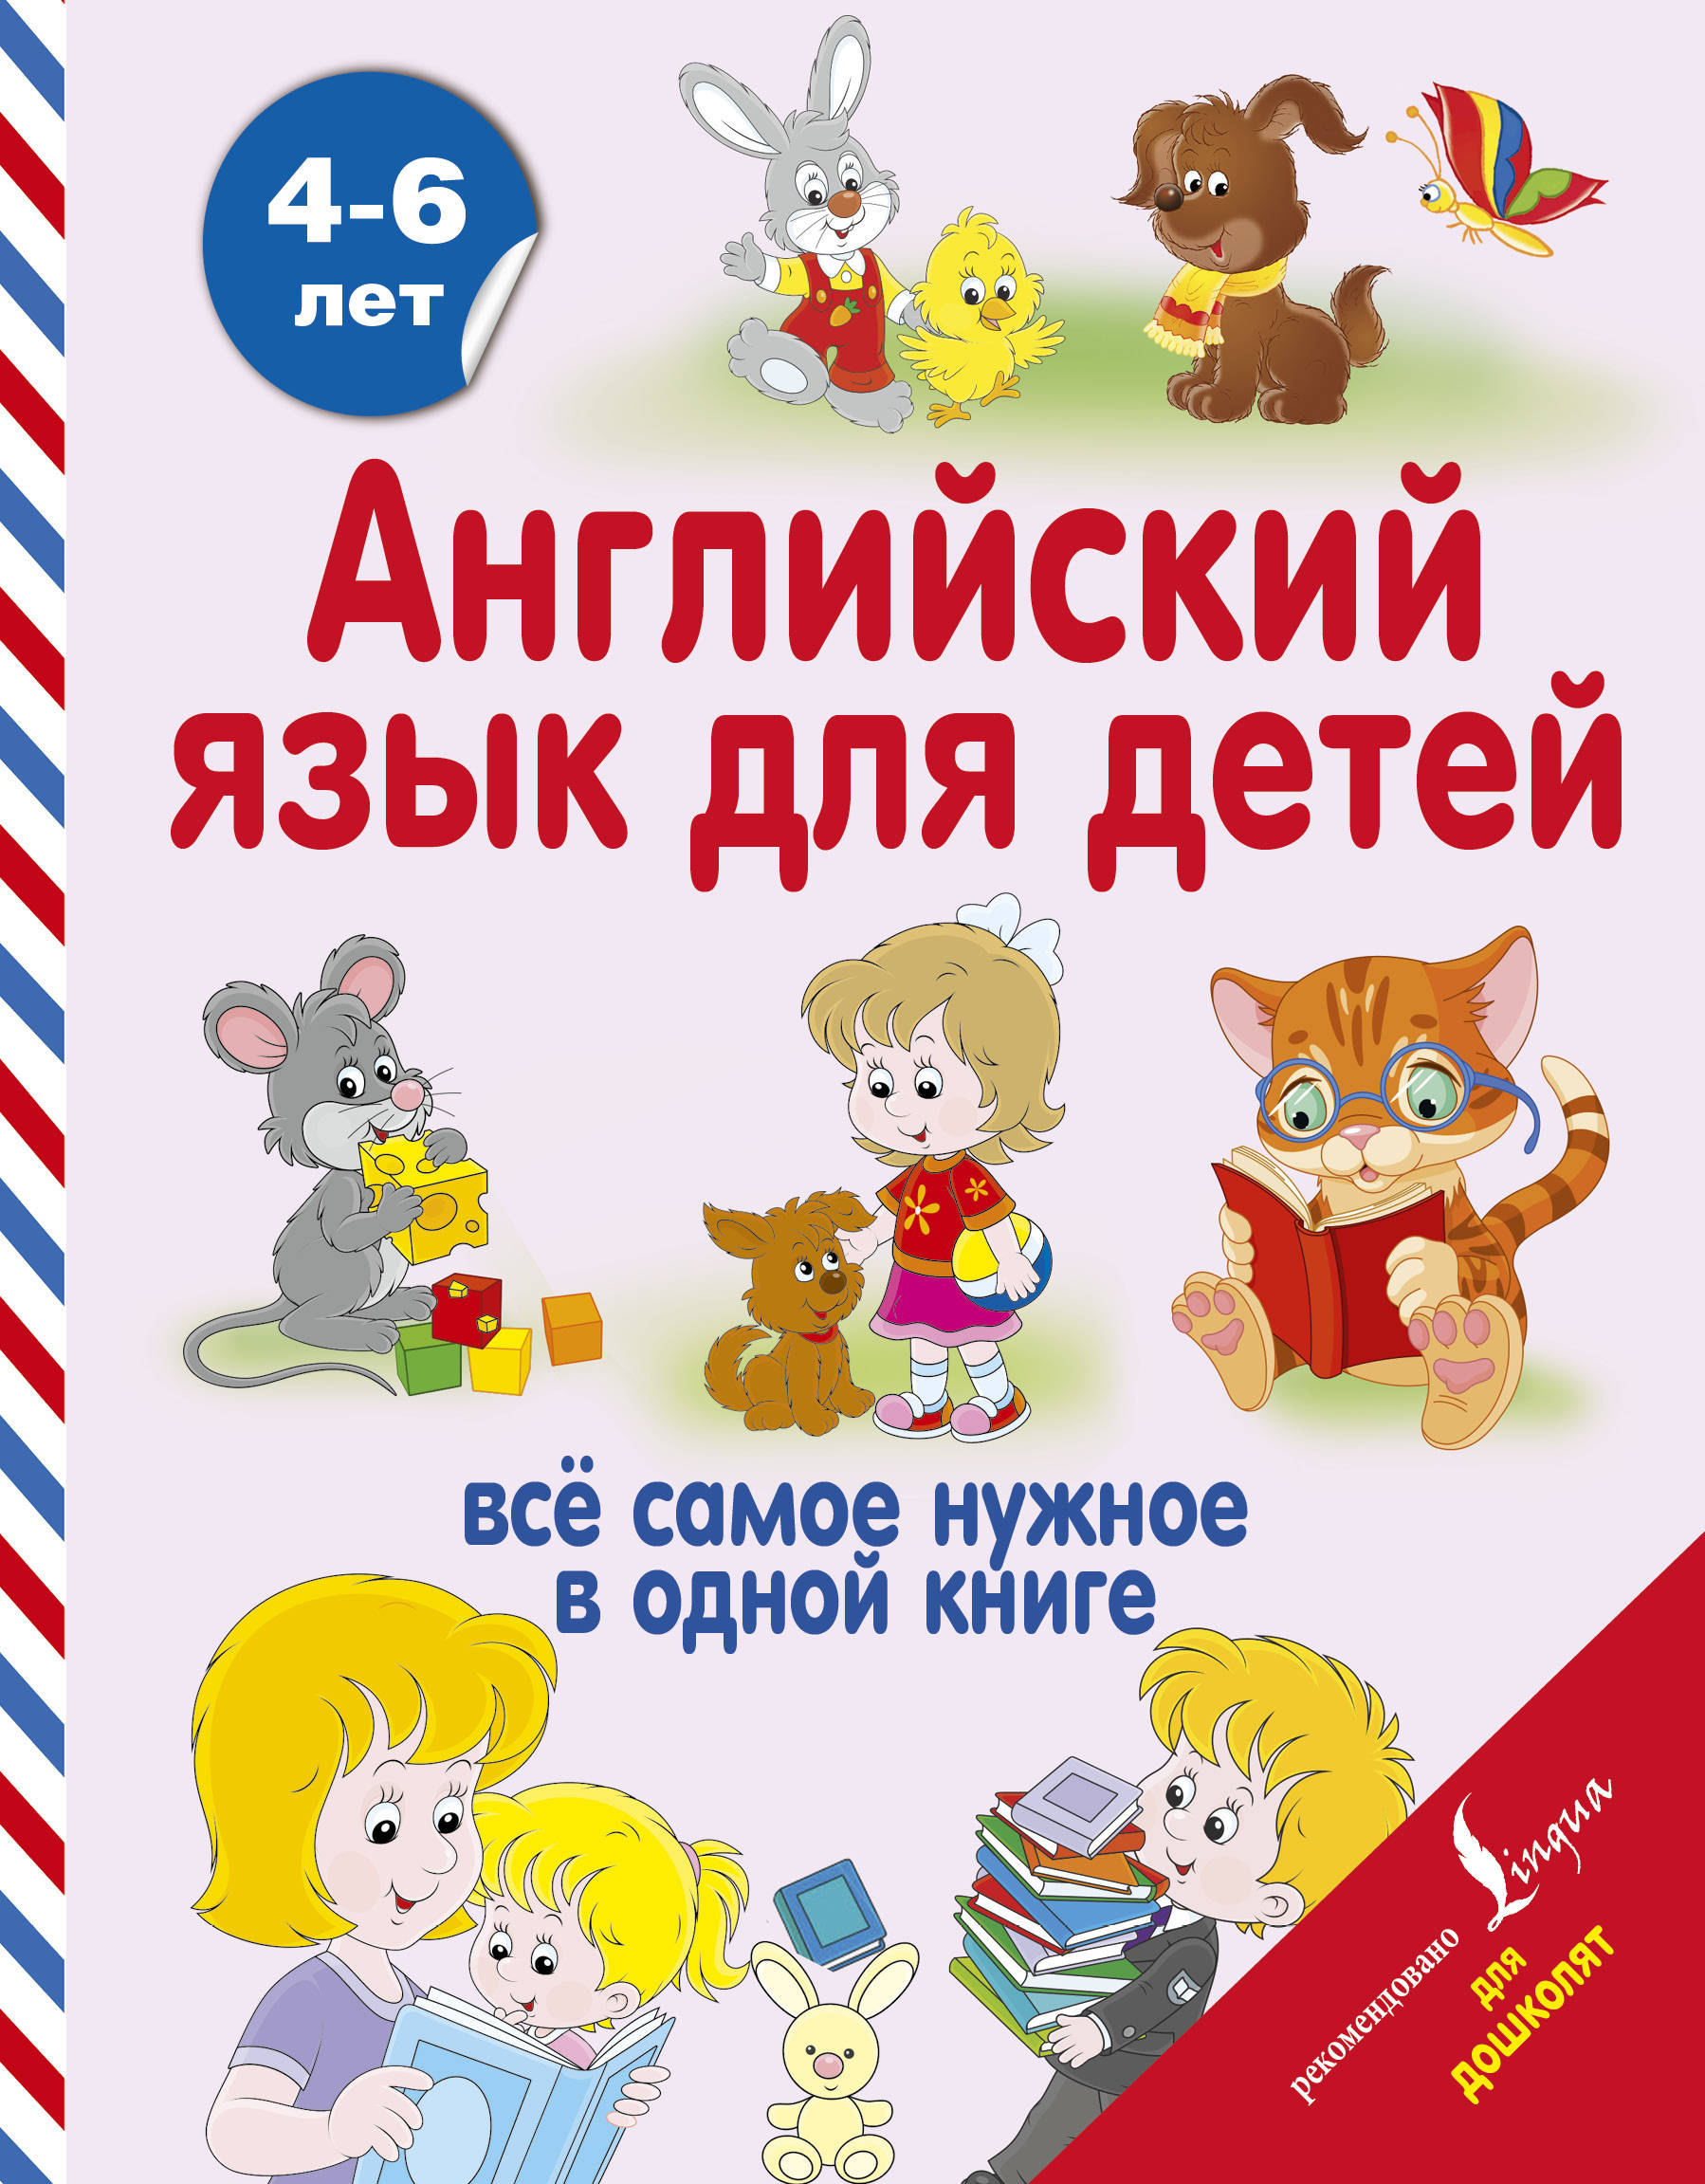 Английский для детей / English for kids